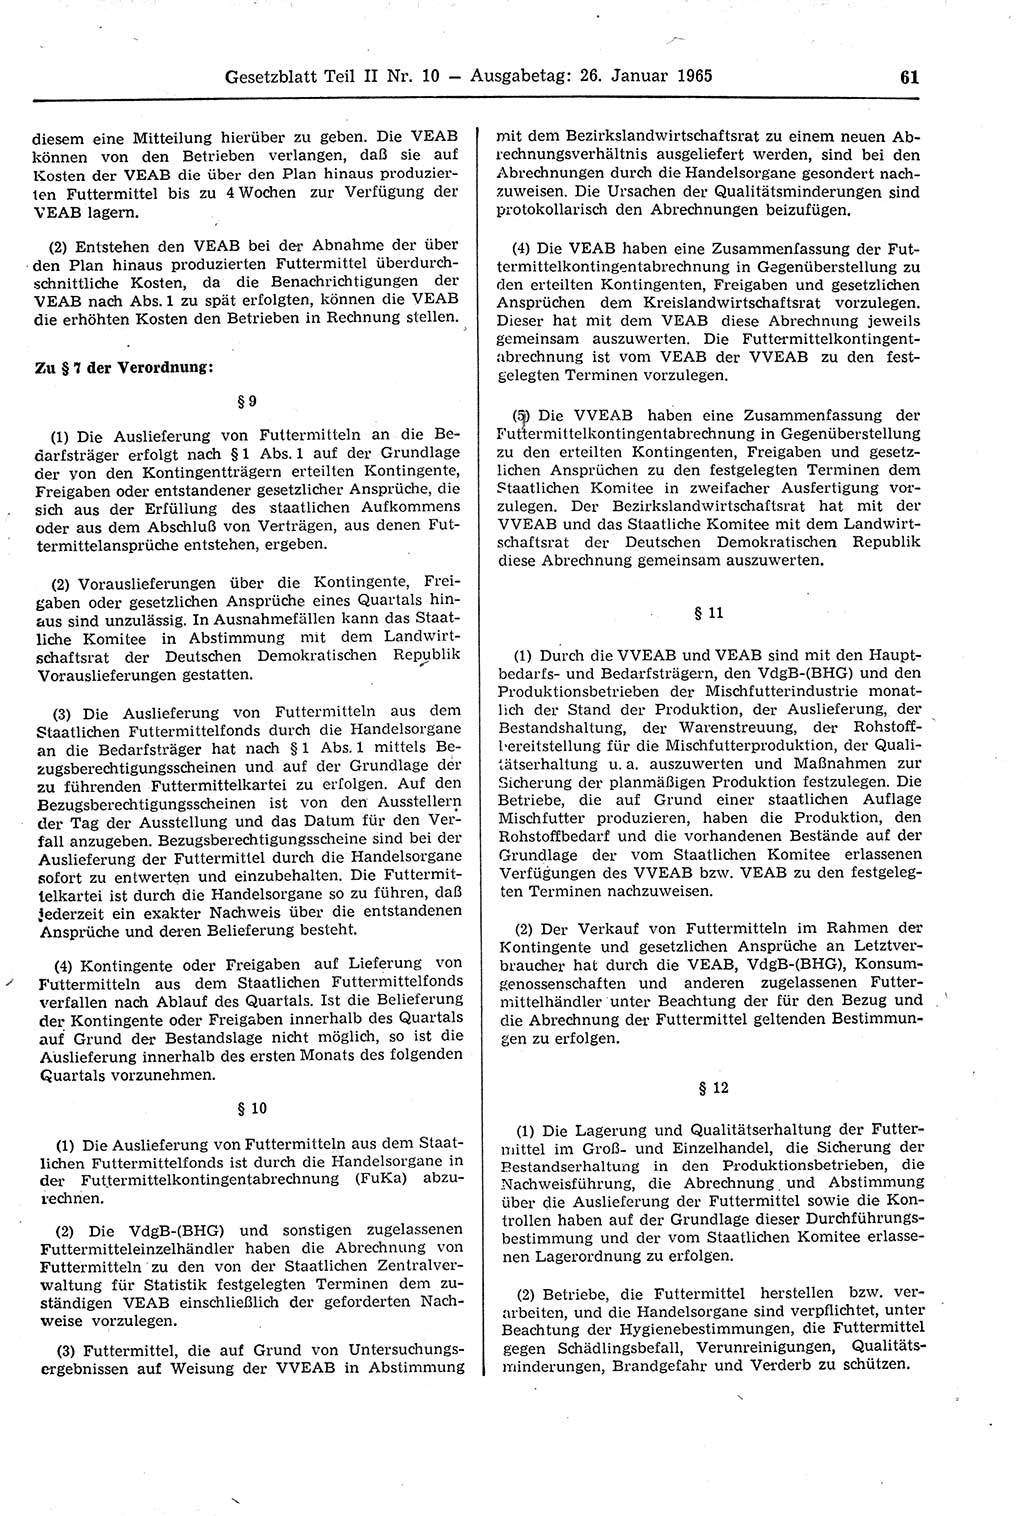 Gesetzblatt (GBl.) der Deutschen Demokratischen Republik (DDR) Teil ⅠⅠ 1965, Seite 61 (GBl. DDR ⅠⅠ 1965, S. 61)